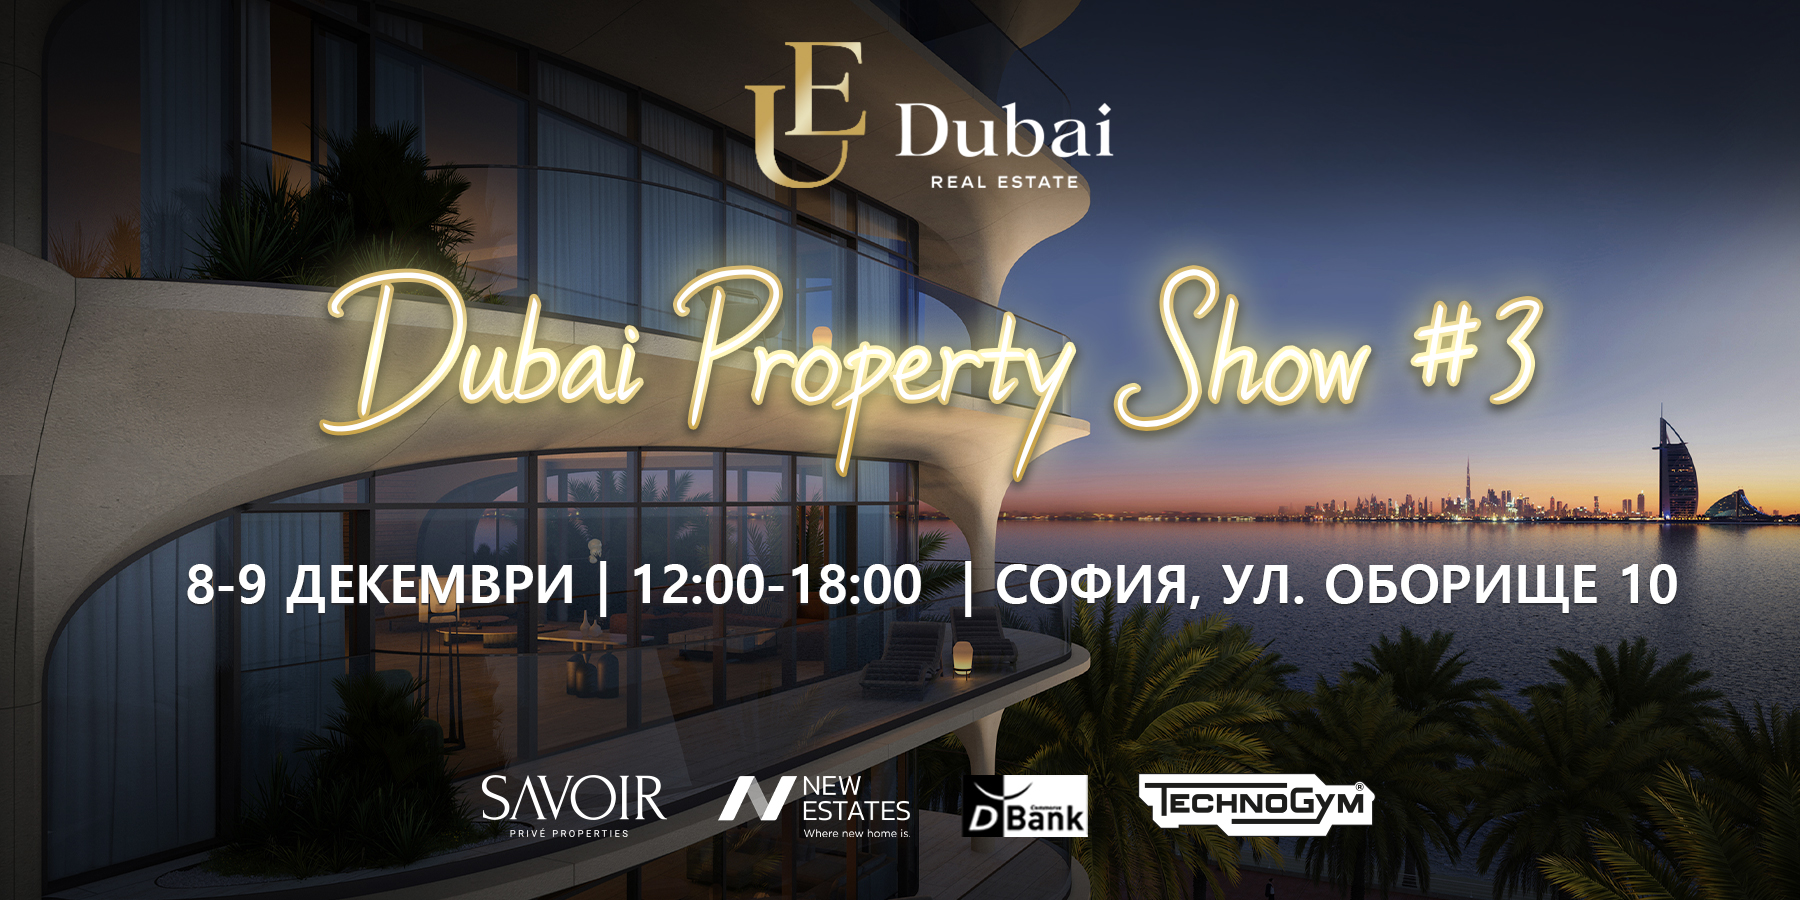 Dubai Property Show 3